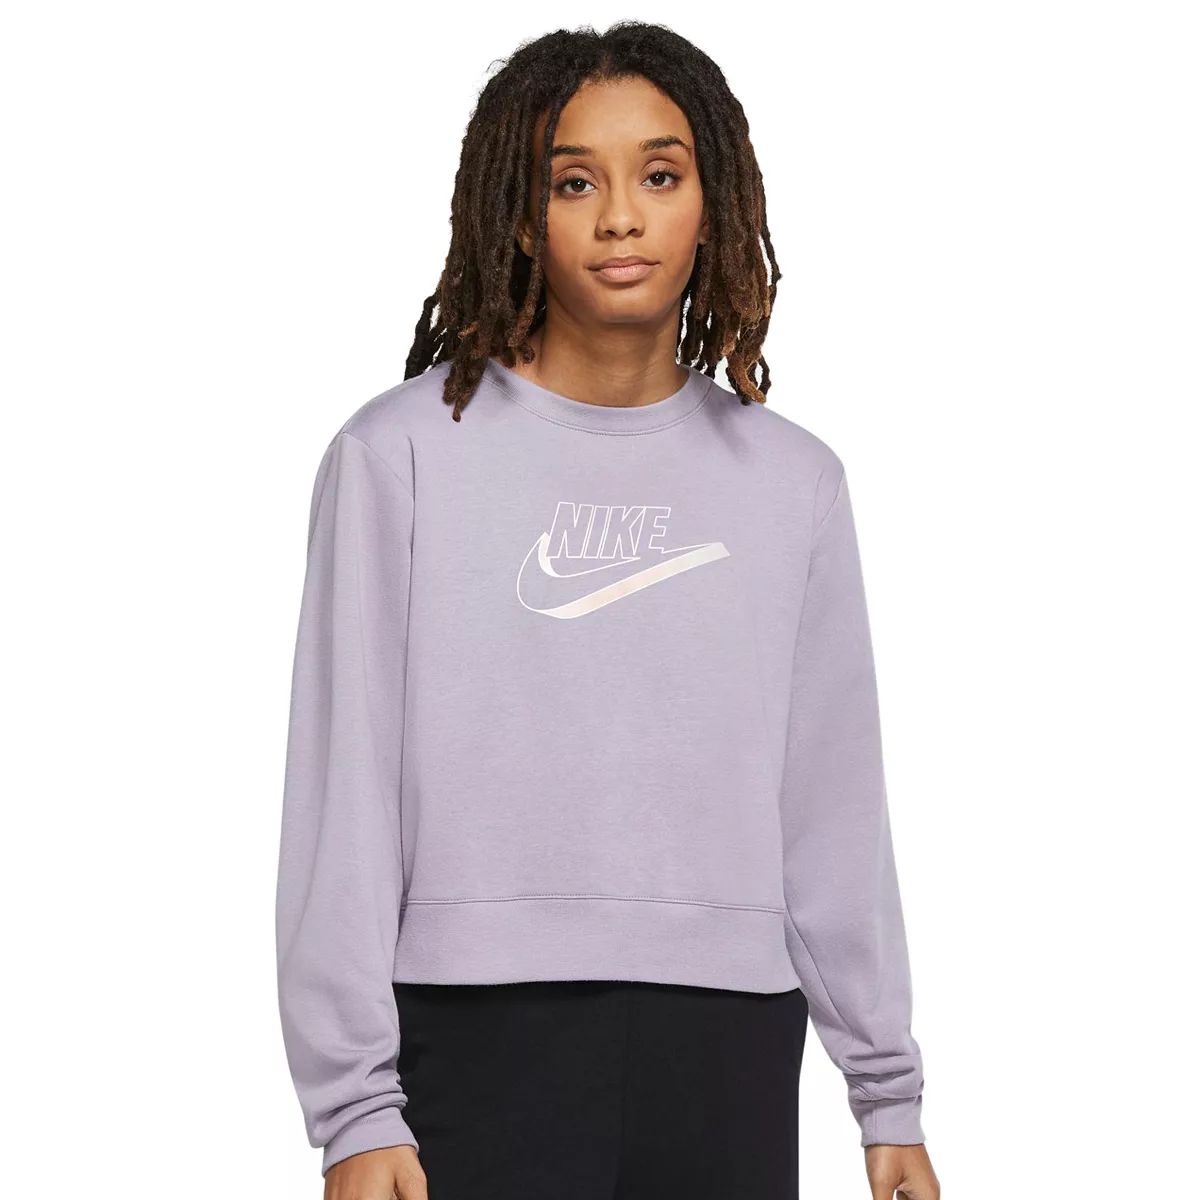 Women's Nike Sportswear Top | Kohl's